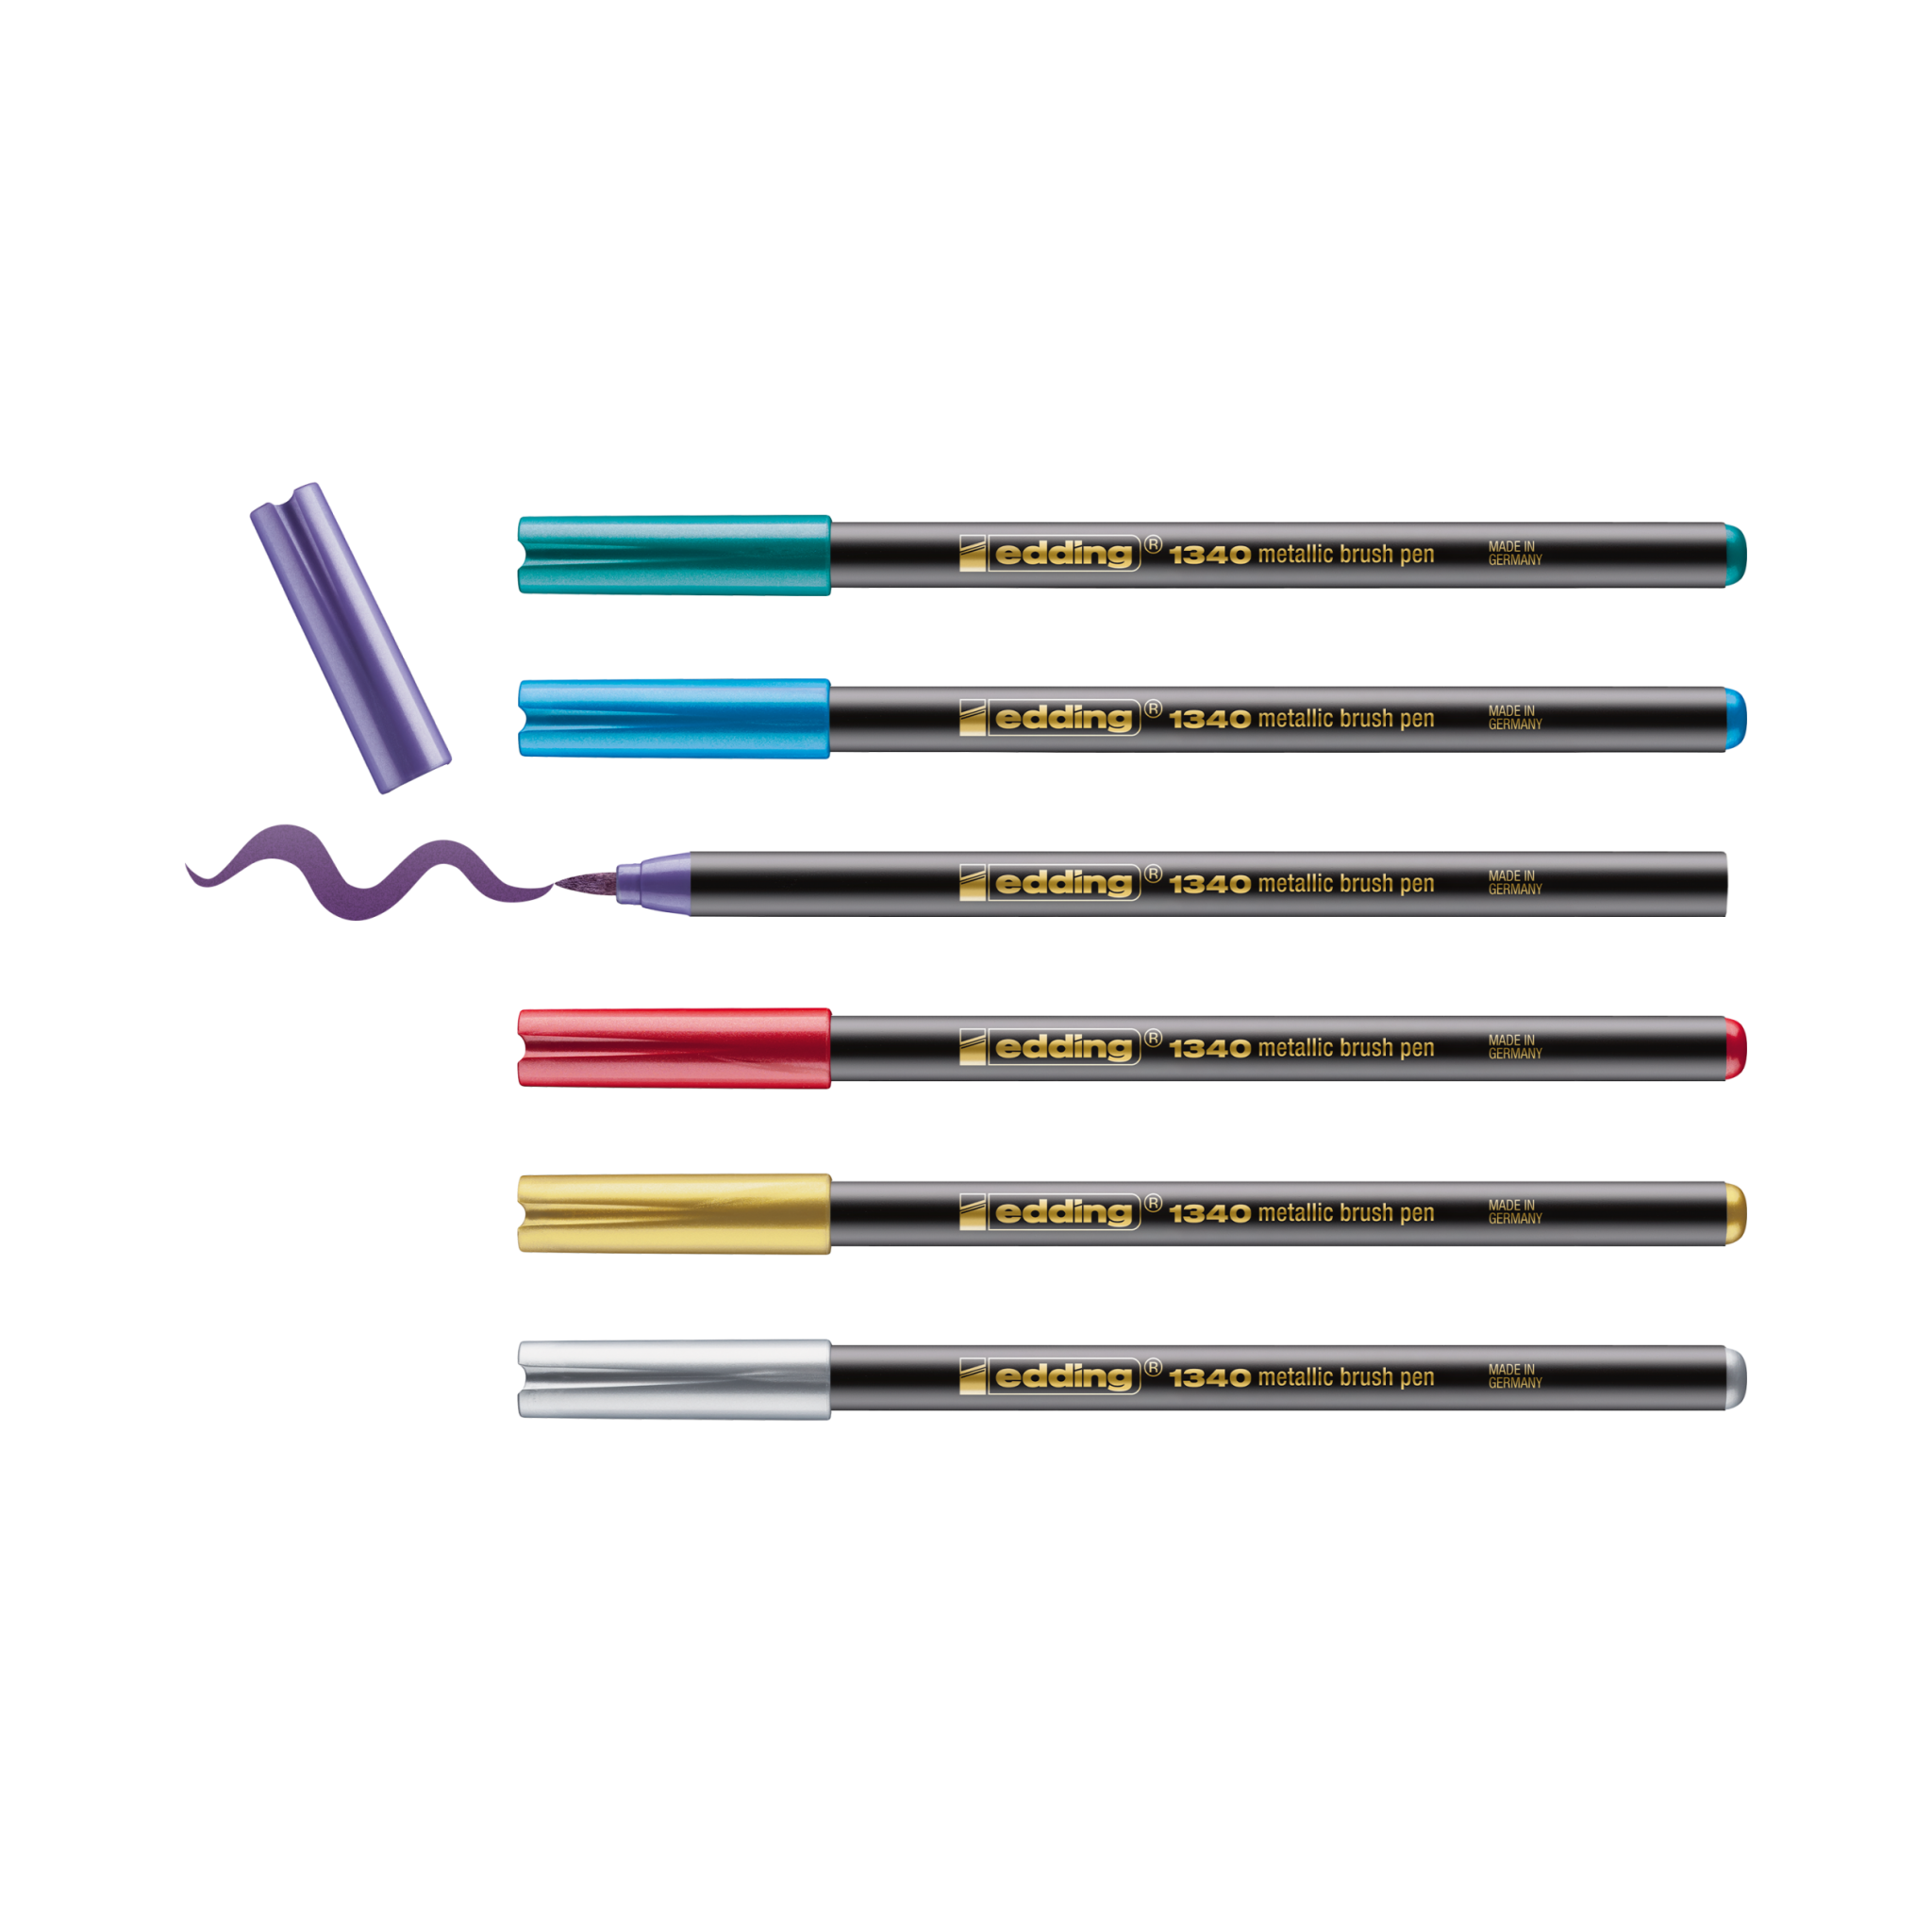 Eine Sammlung von sieben leuchtenden edding 1340 metallischen Pinselstift-Markern, jeder mit unterschiedlich farbigen Kappen und Spitzen, präsentiert vor einem schwarzen Hintergrund mit einer wellenförmigen Linie, die von einem der Marker gezeichnet wird.